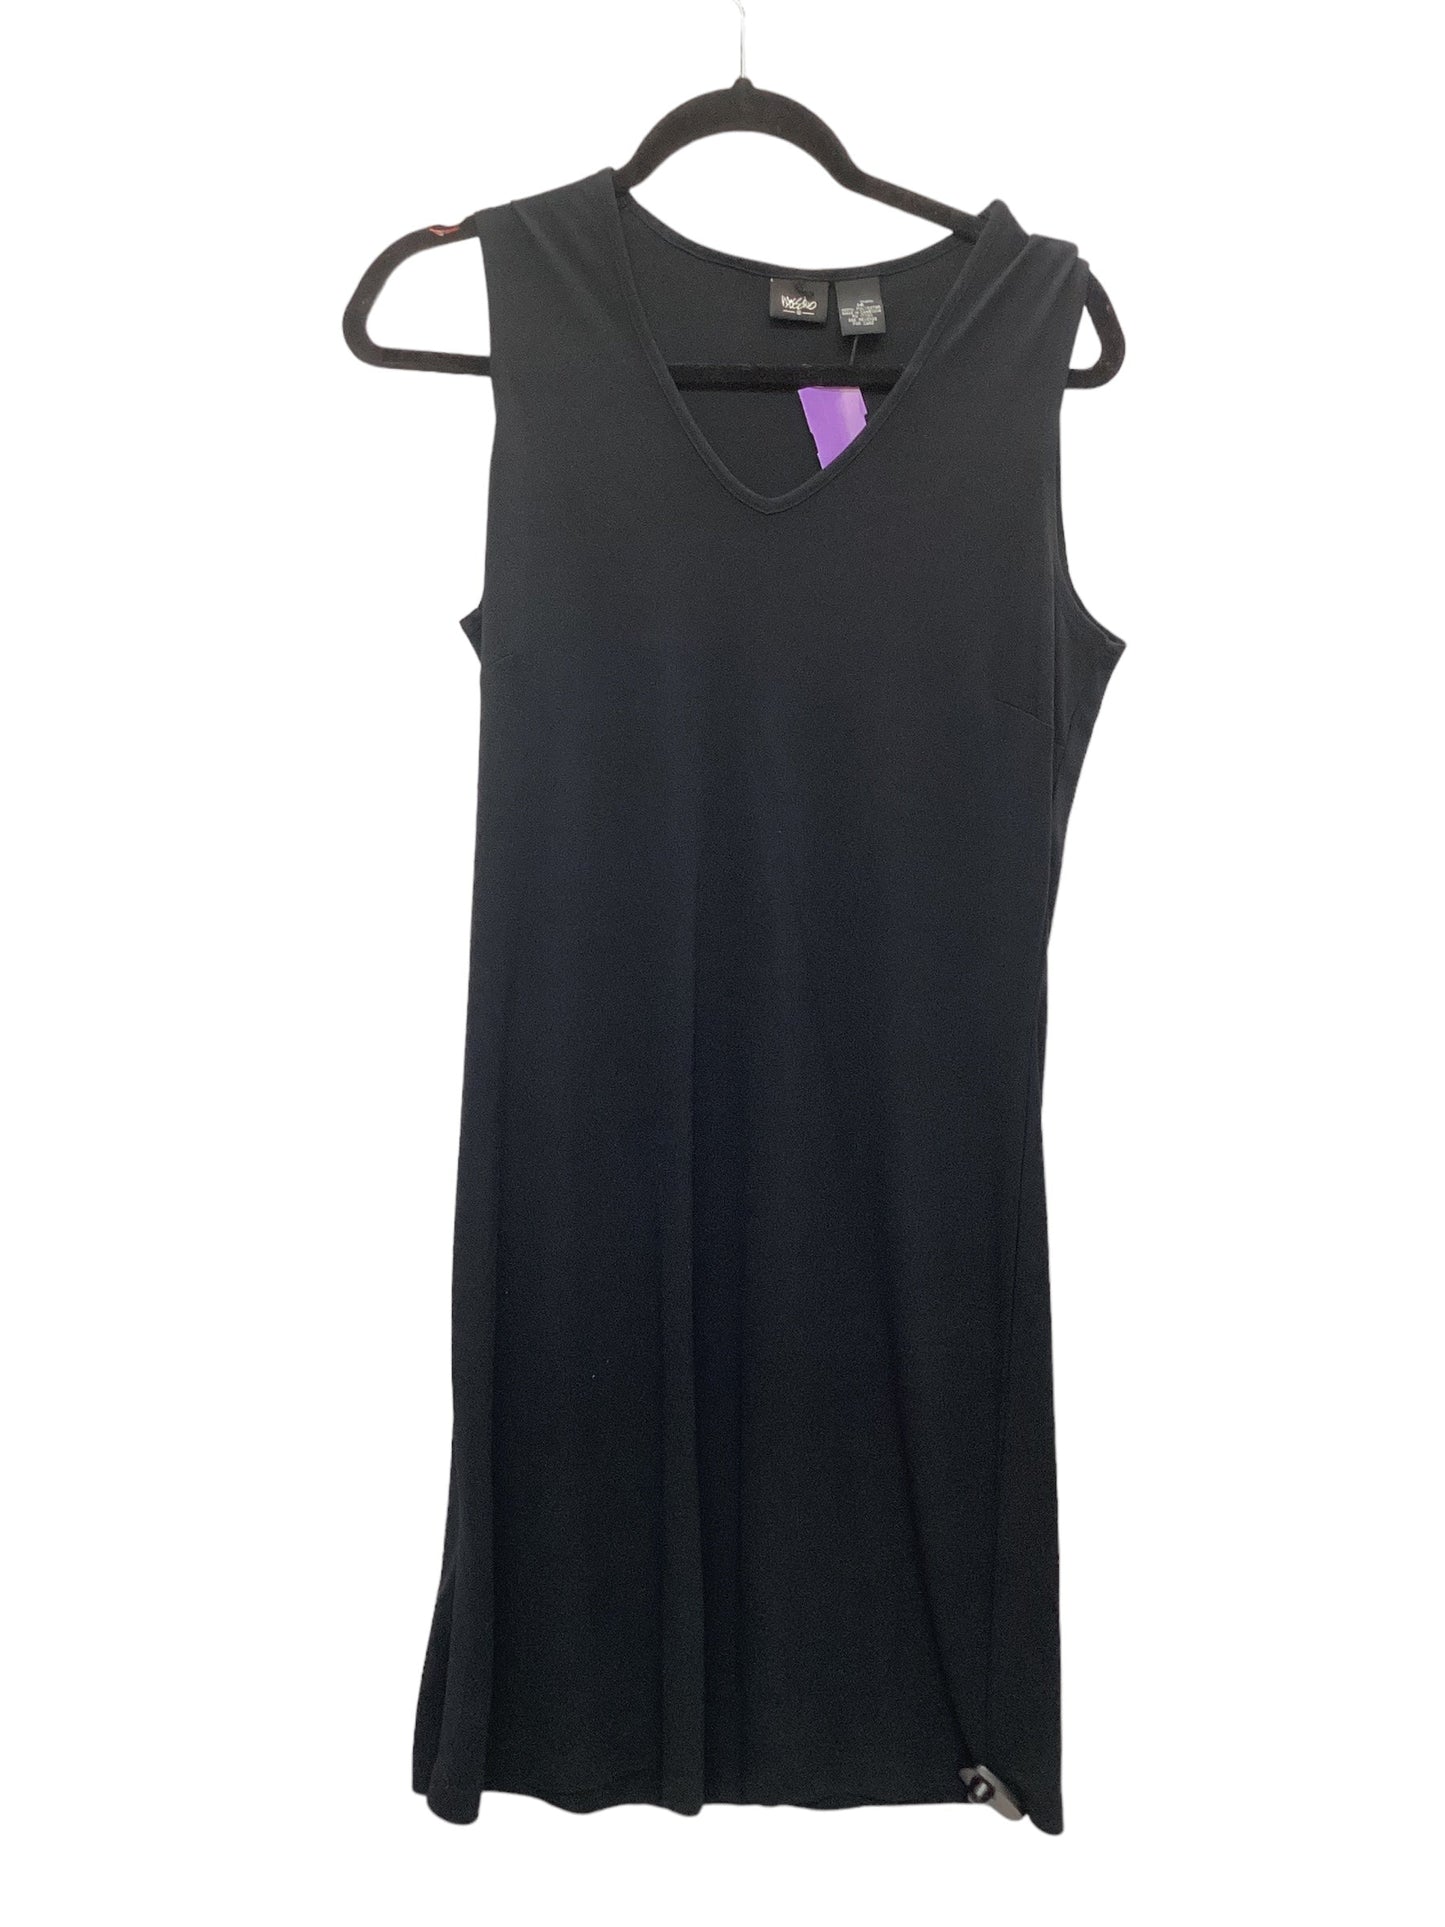 Black Dress Casual Midi Mossimo, Size 14